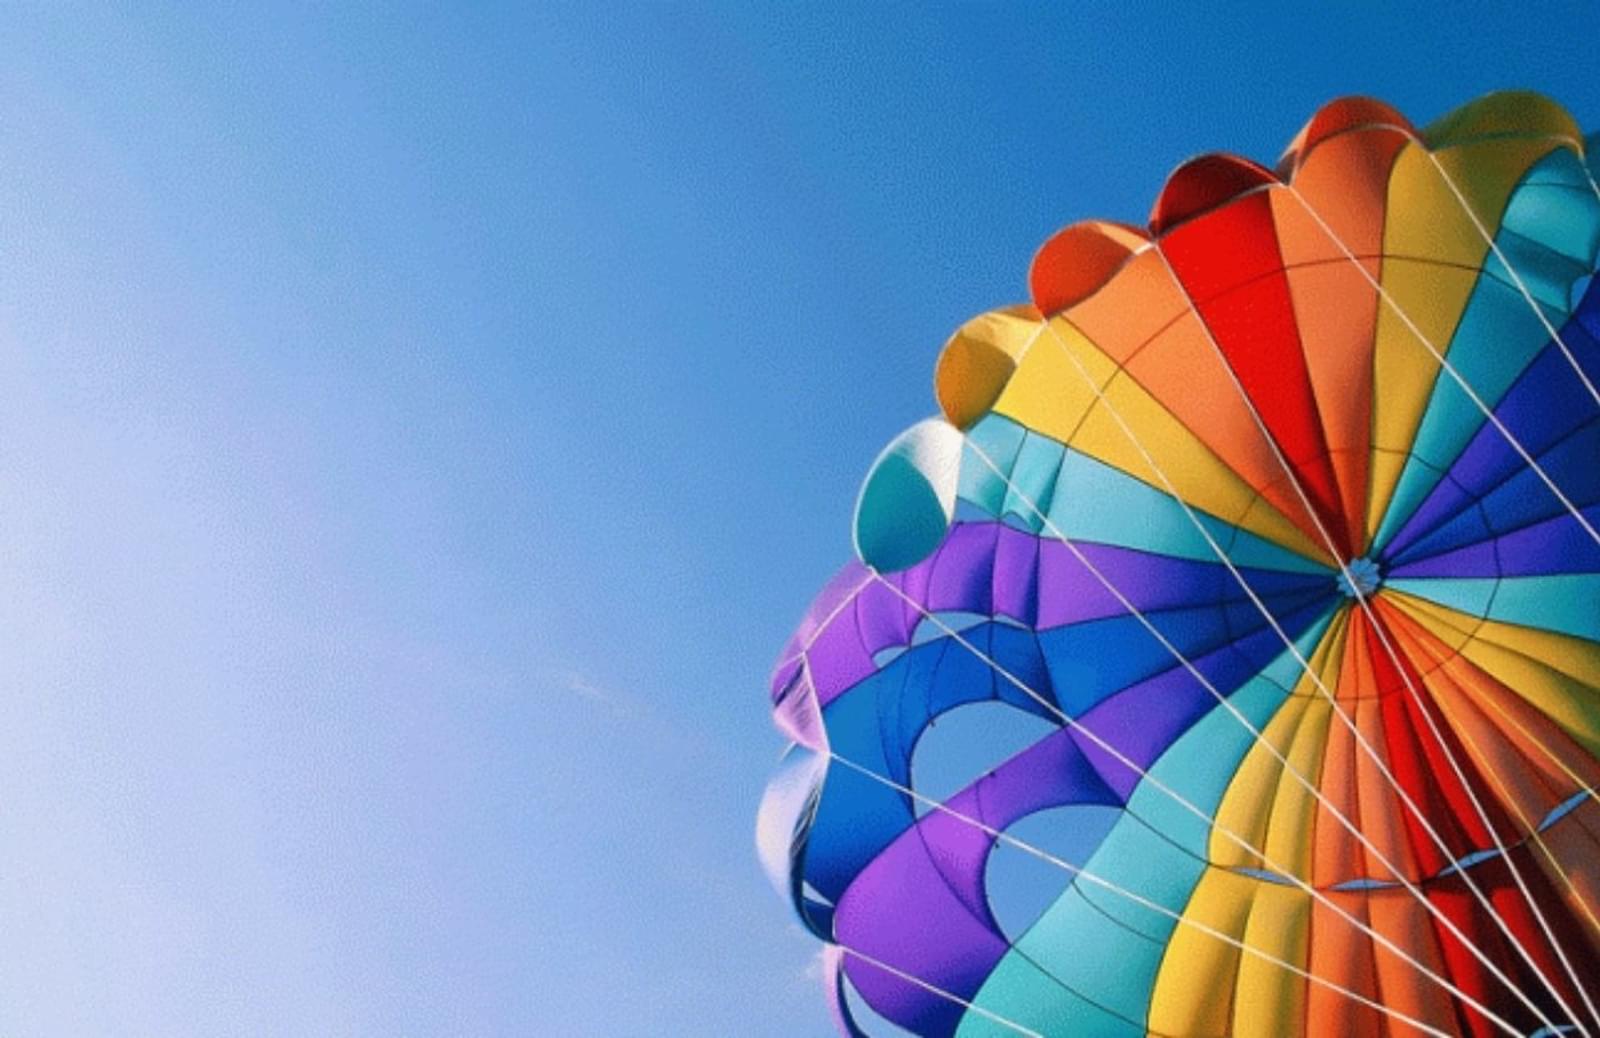 Colorful open parachute against a blue sky